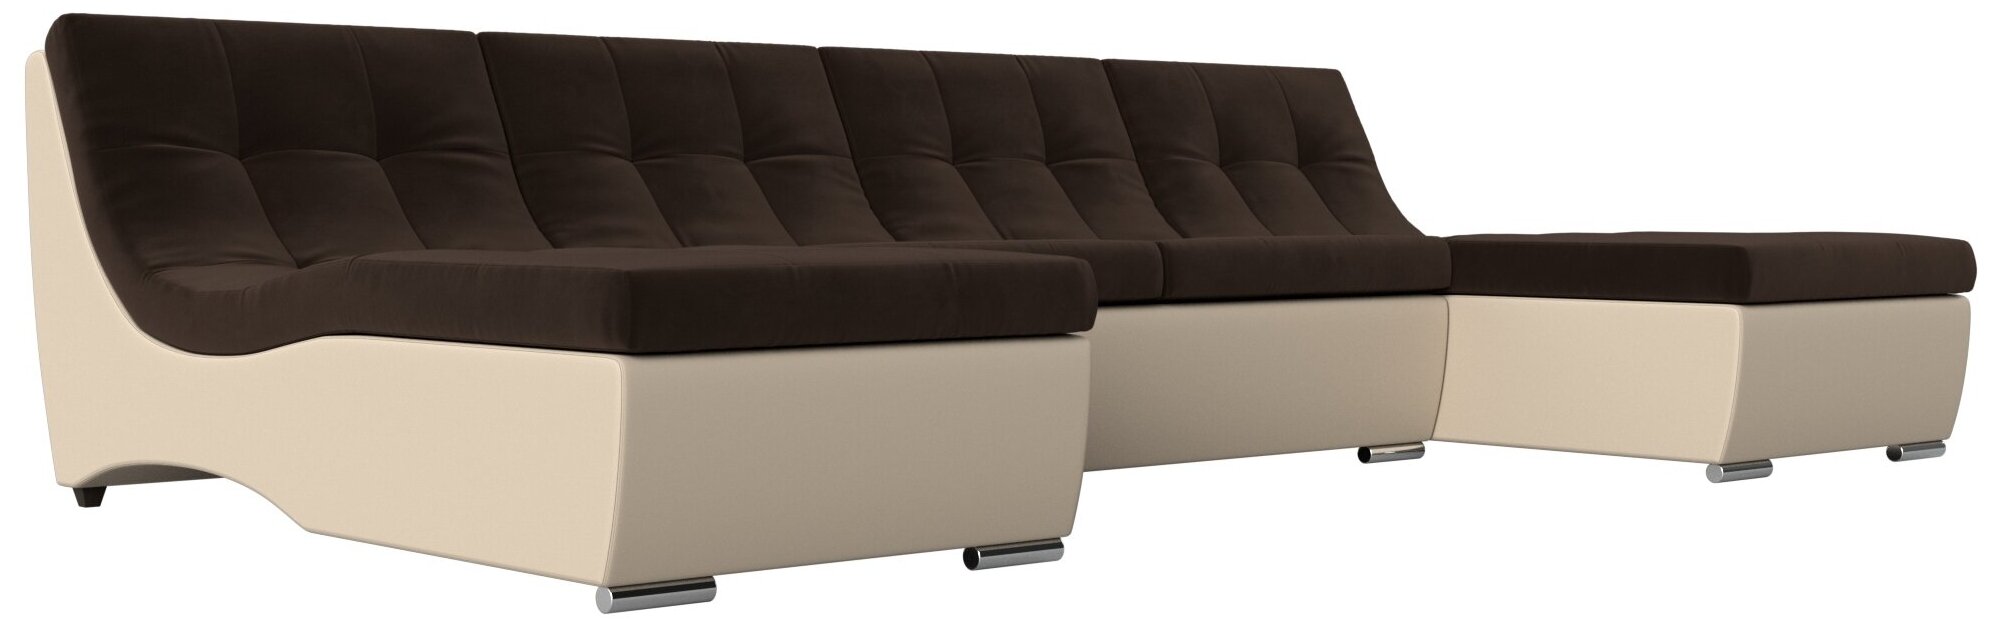 П-образный модульный диван Монреаль, Микровельвет, Модель 111556